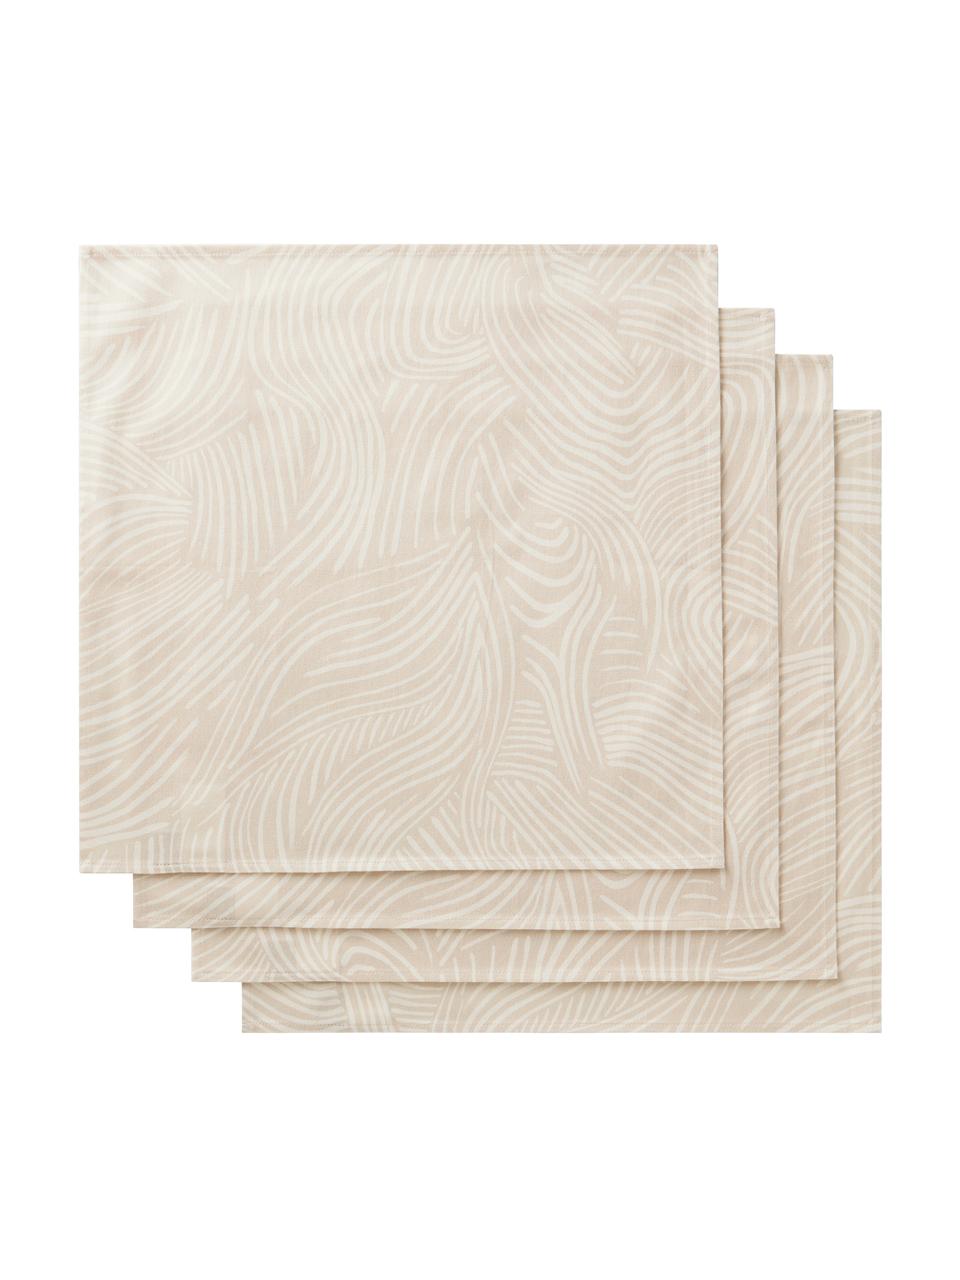 Baumwoll-Stoff-Servietten Vida in Beige mit feinen Linien, 4 Stück, 100% Baumwolle, Beige, 45 x 45 cm